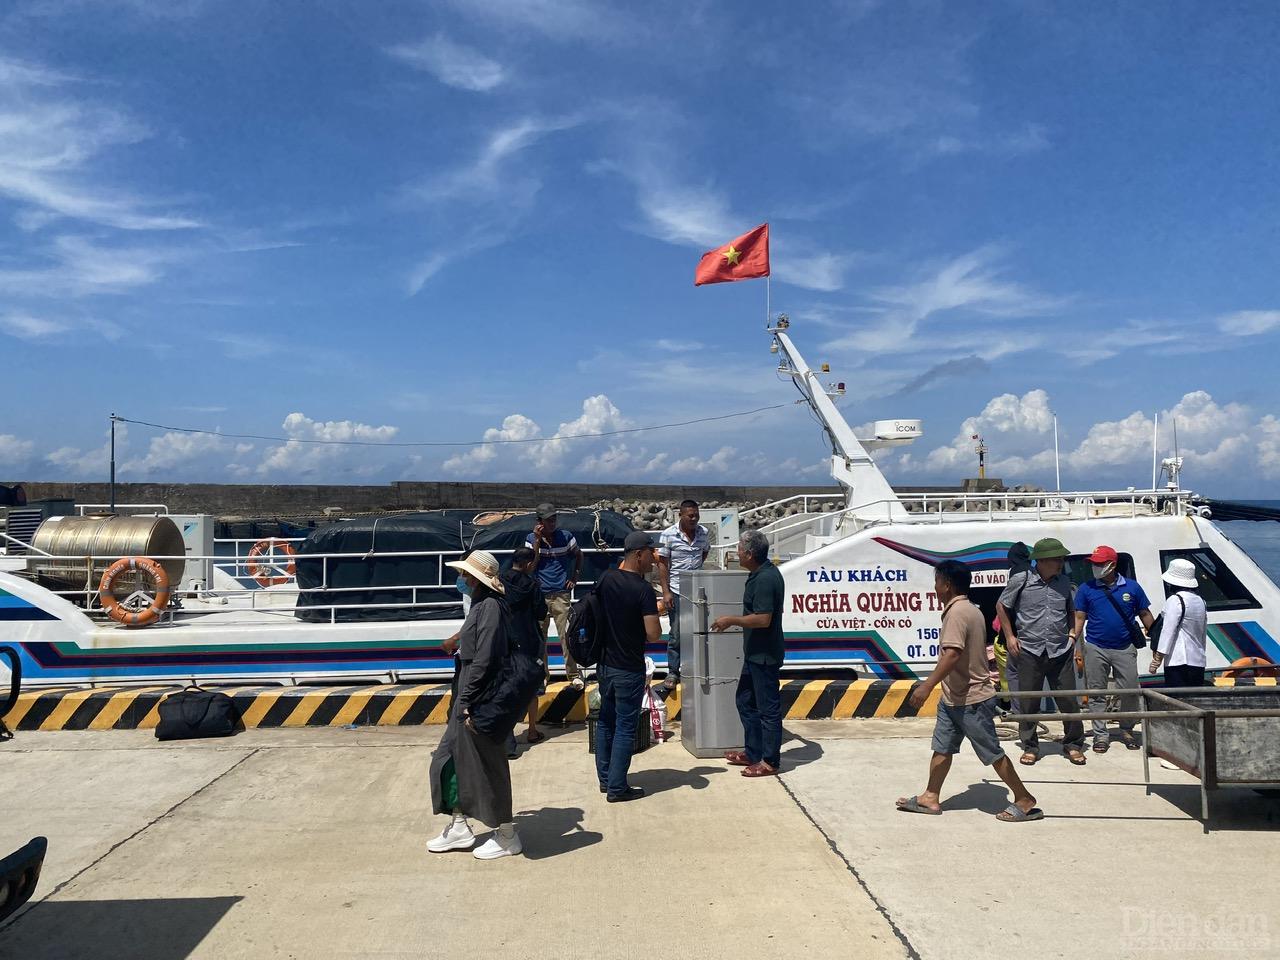 Tàu cao tốc 190 mã lực của Công ty TNHH Chín Nghĩa Quảng Trị đưa du khách thập phương ra với đảo Cồn Cỏ